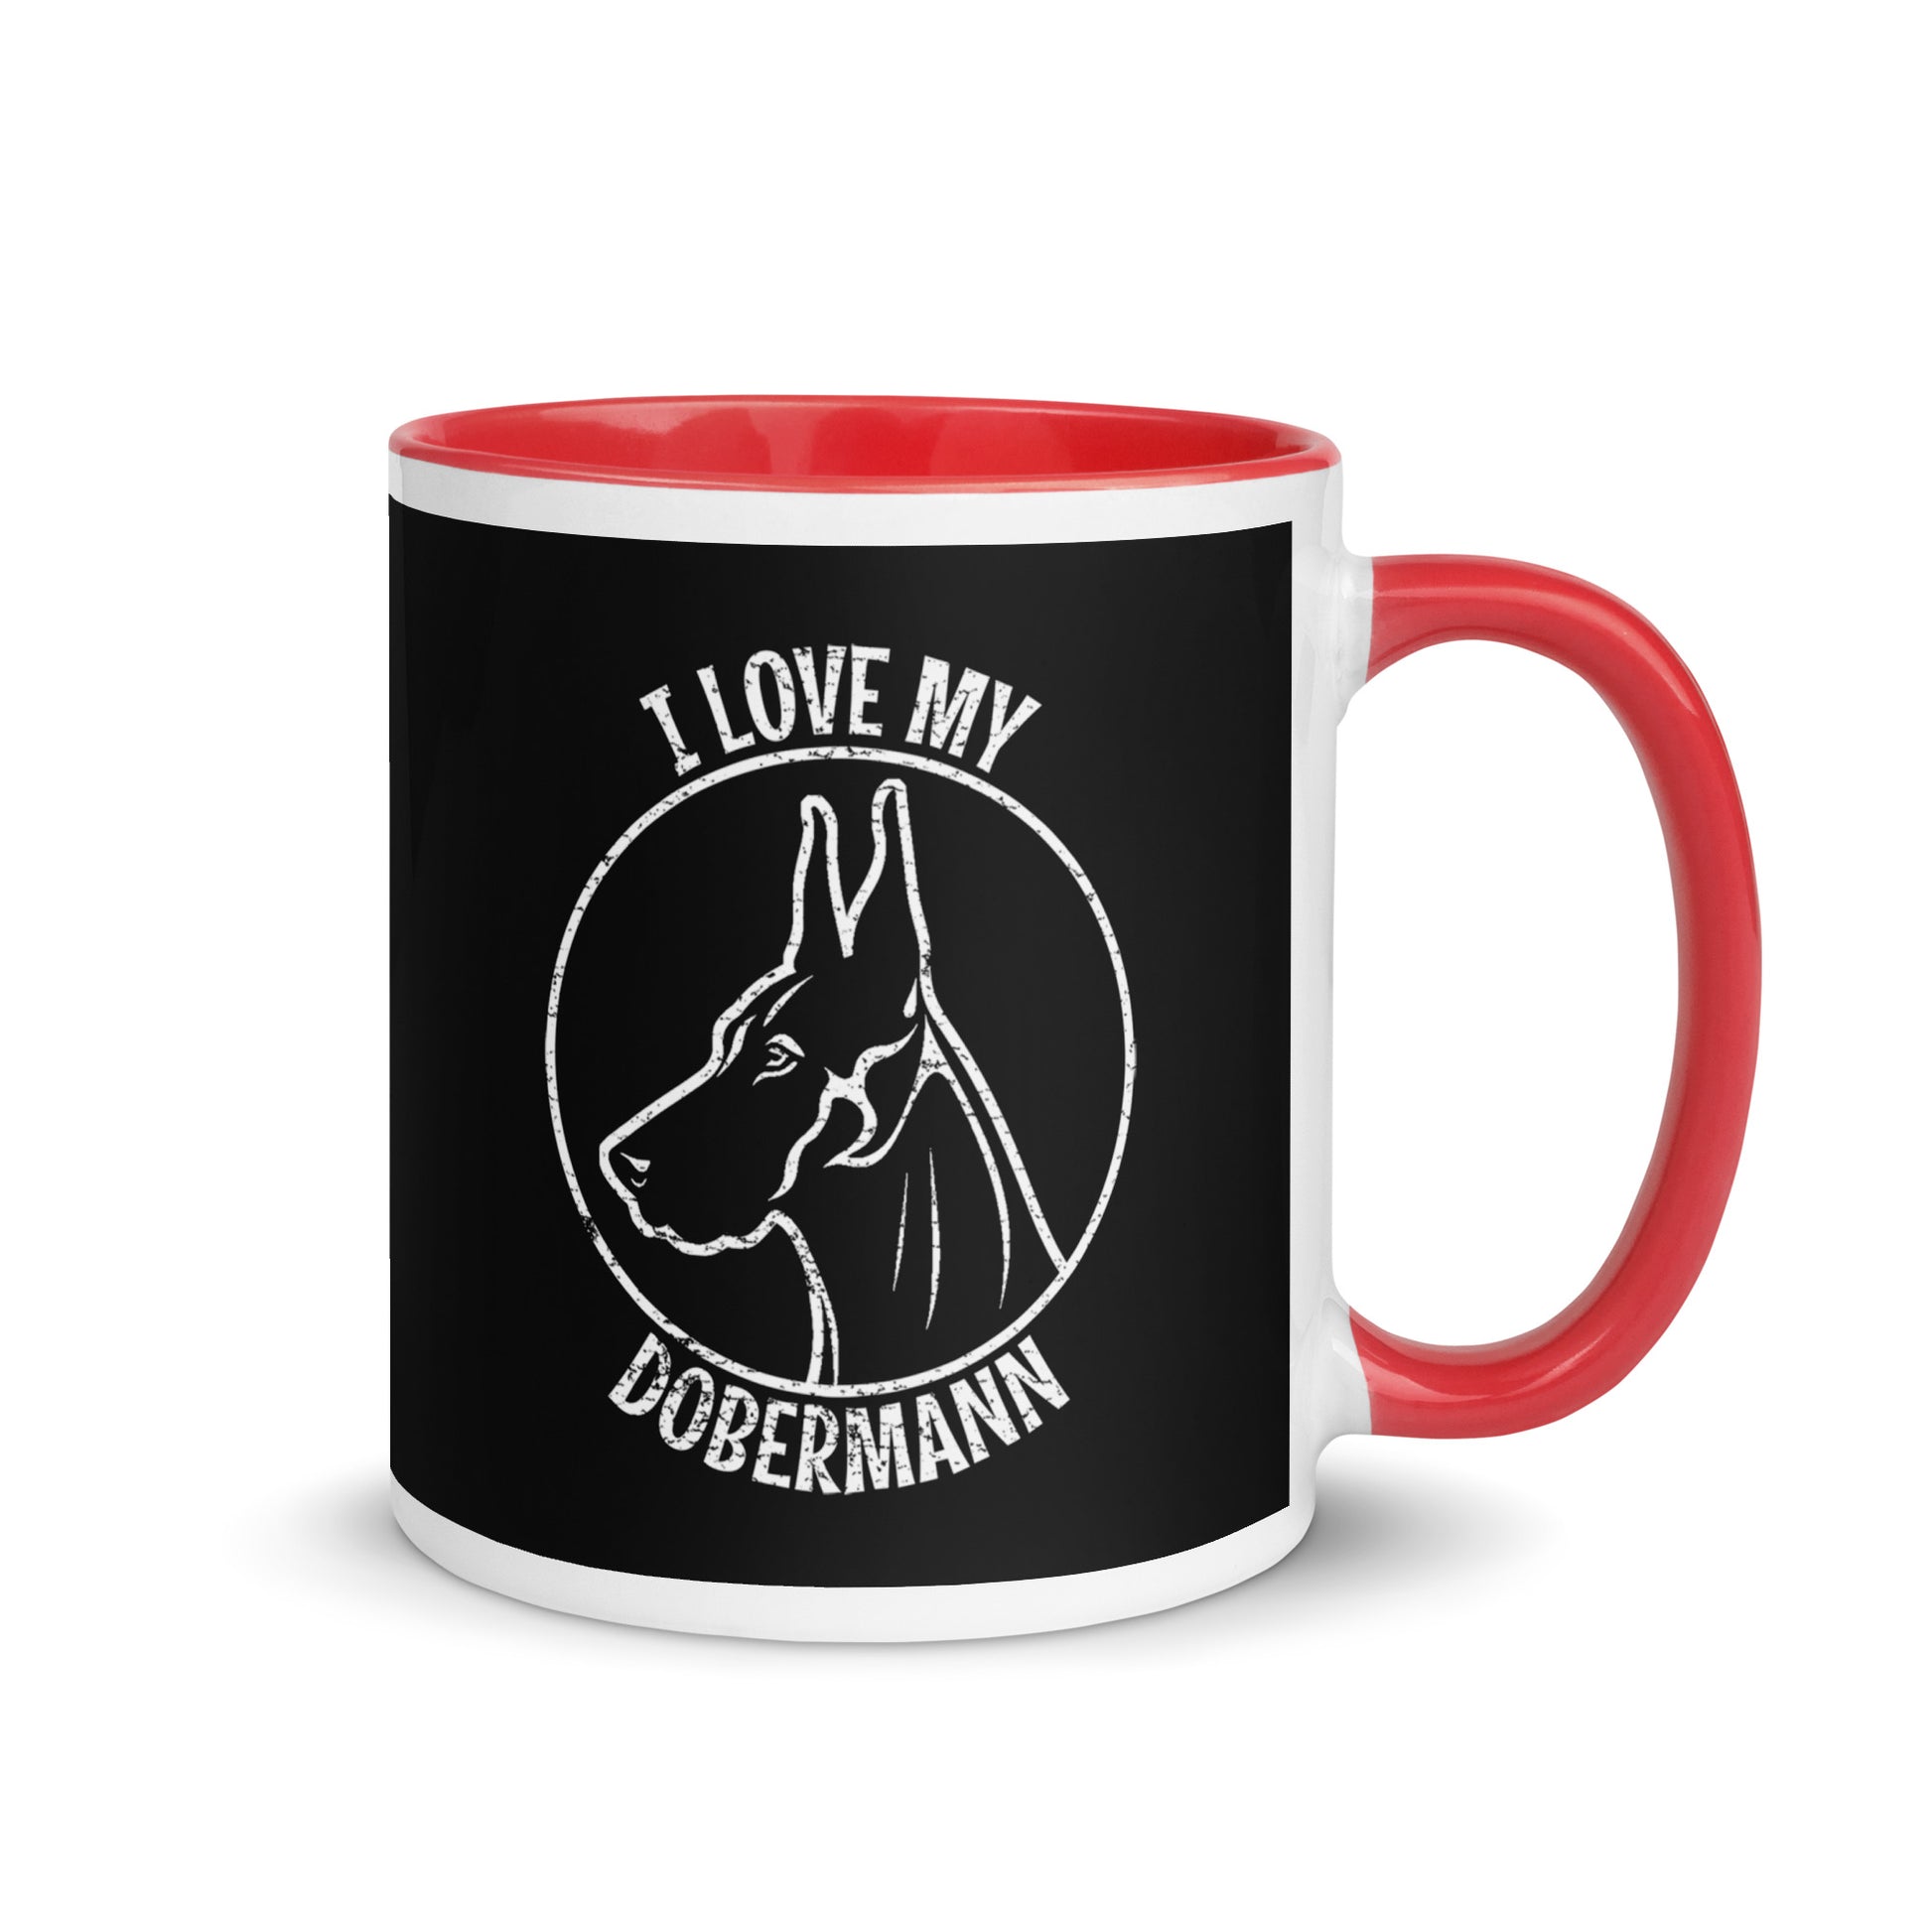 Doberman Mug, Dobermann gift, gift for dog mom, custom dog gift, dog owner gift, pet memorial gift